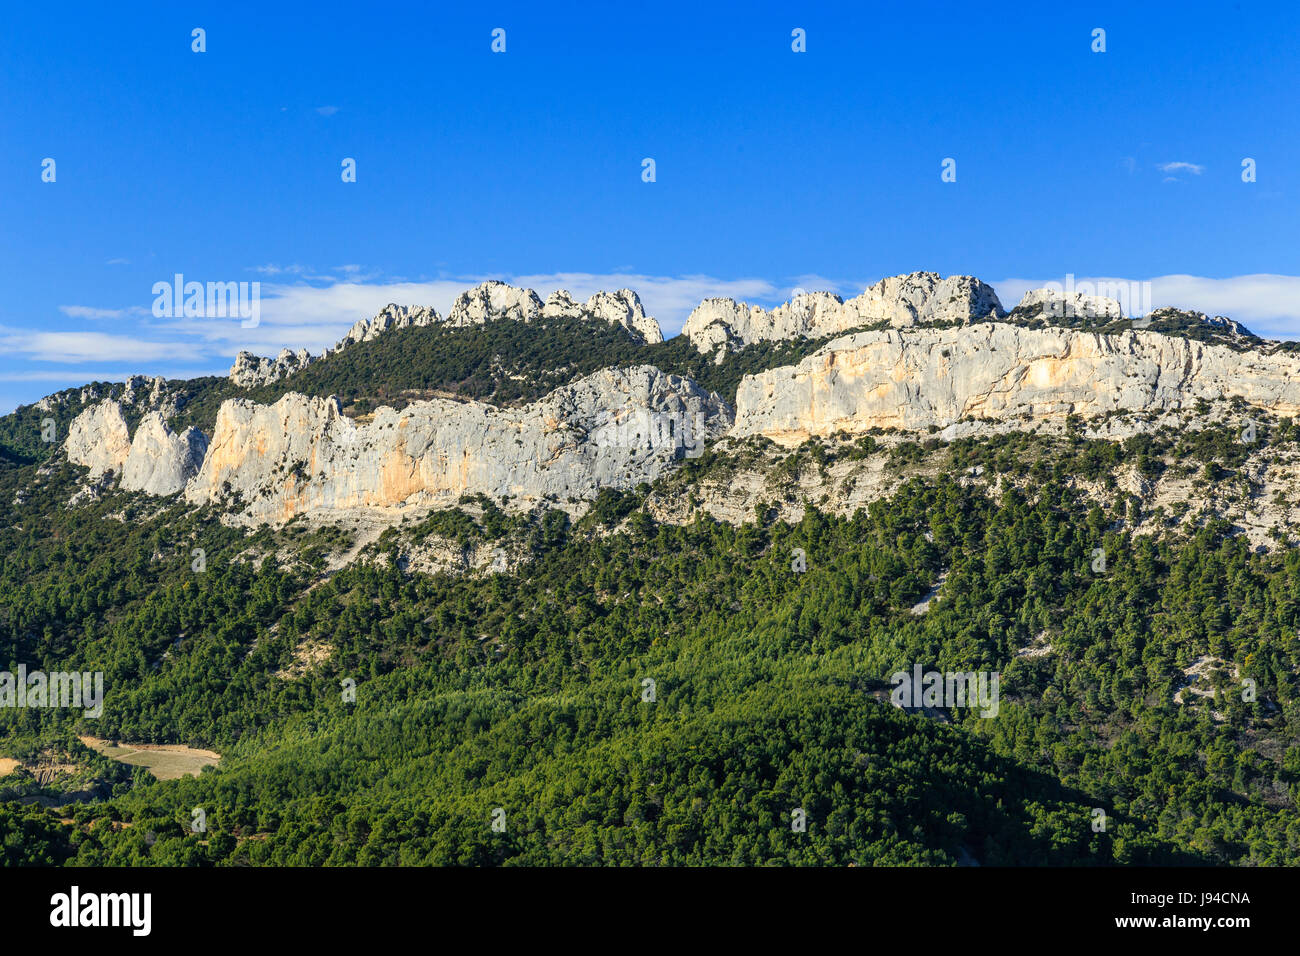 France, Vaucluse, La Roque-Alric, the Dentelles de Montmirail seen from the village Stock Photo